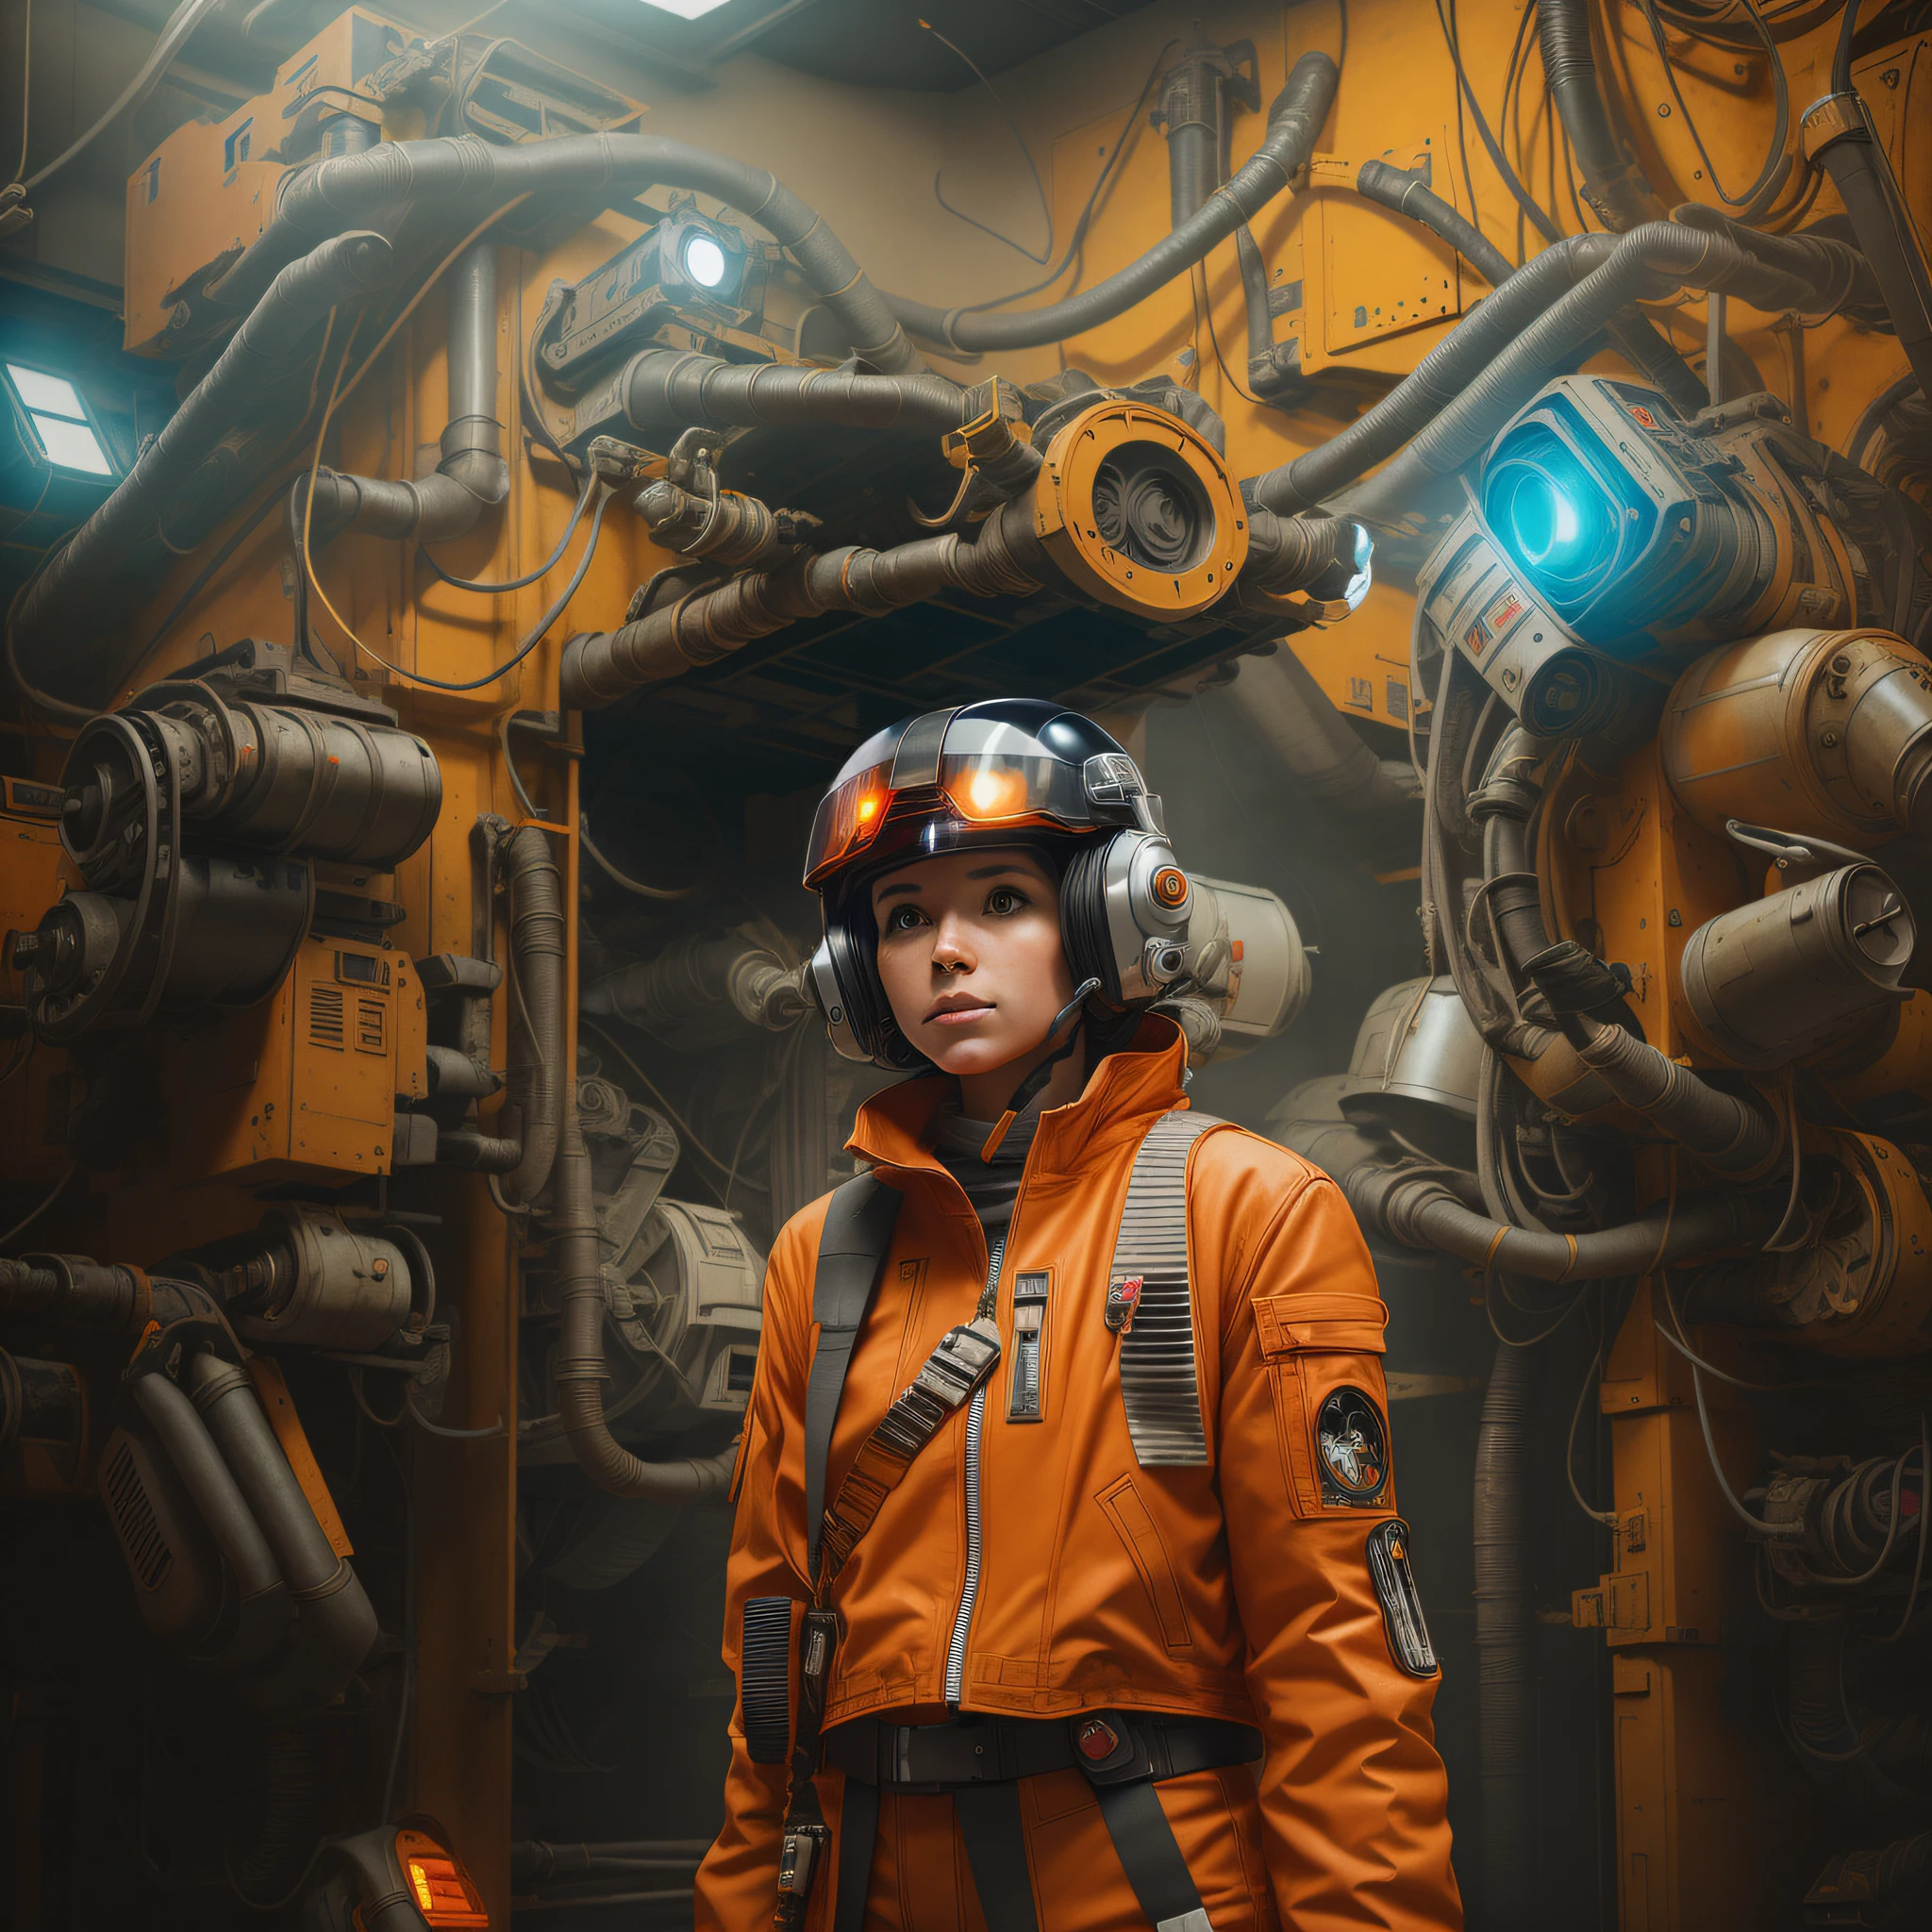 一名身穿橙色夾克、戴著頭盔的 X 翼女飛行員站在一個有很多機械的房間裡, 星際大戰藝術超寫實 8k, 电影般的感觉, 肖像未來派飛行員女孩, 風格混合的人, 夢幻賽博龐克女孩, 機甲網路裝甲的女孩, 肖像 美丽 科幻 女孩, 科幻電影